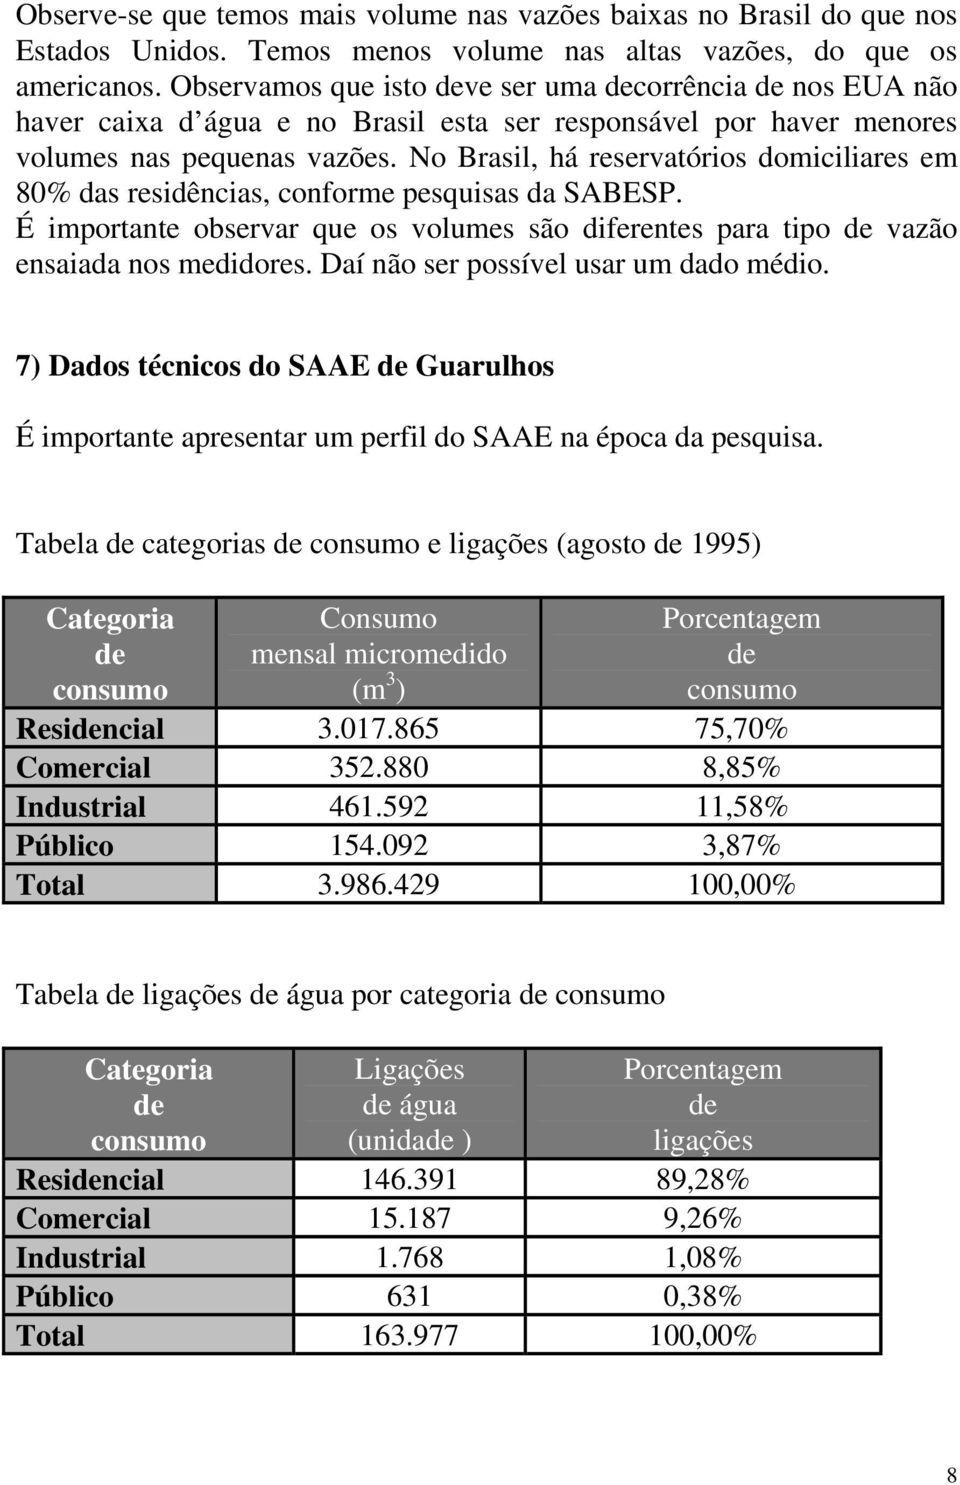 No Brasil, há reservatórios domiciliares em 80% das residências, conforme pesquisas da SABESP. É importante observar que os volumes são diferentes para tipo de vazão ensaiada nos medidores.